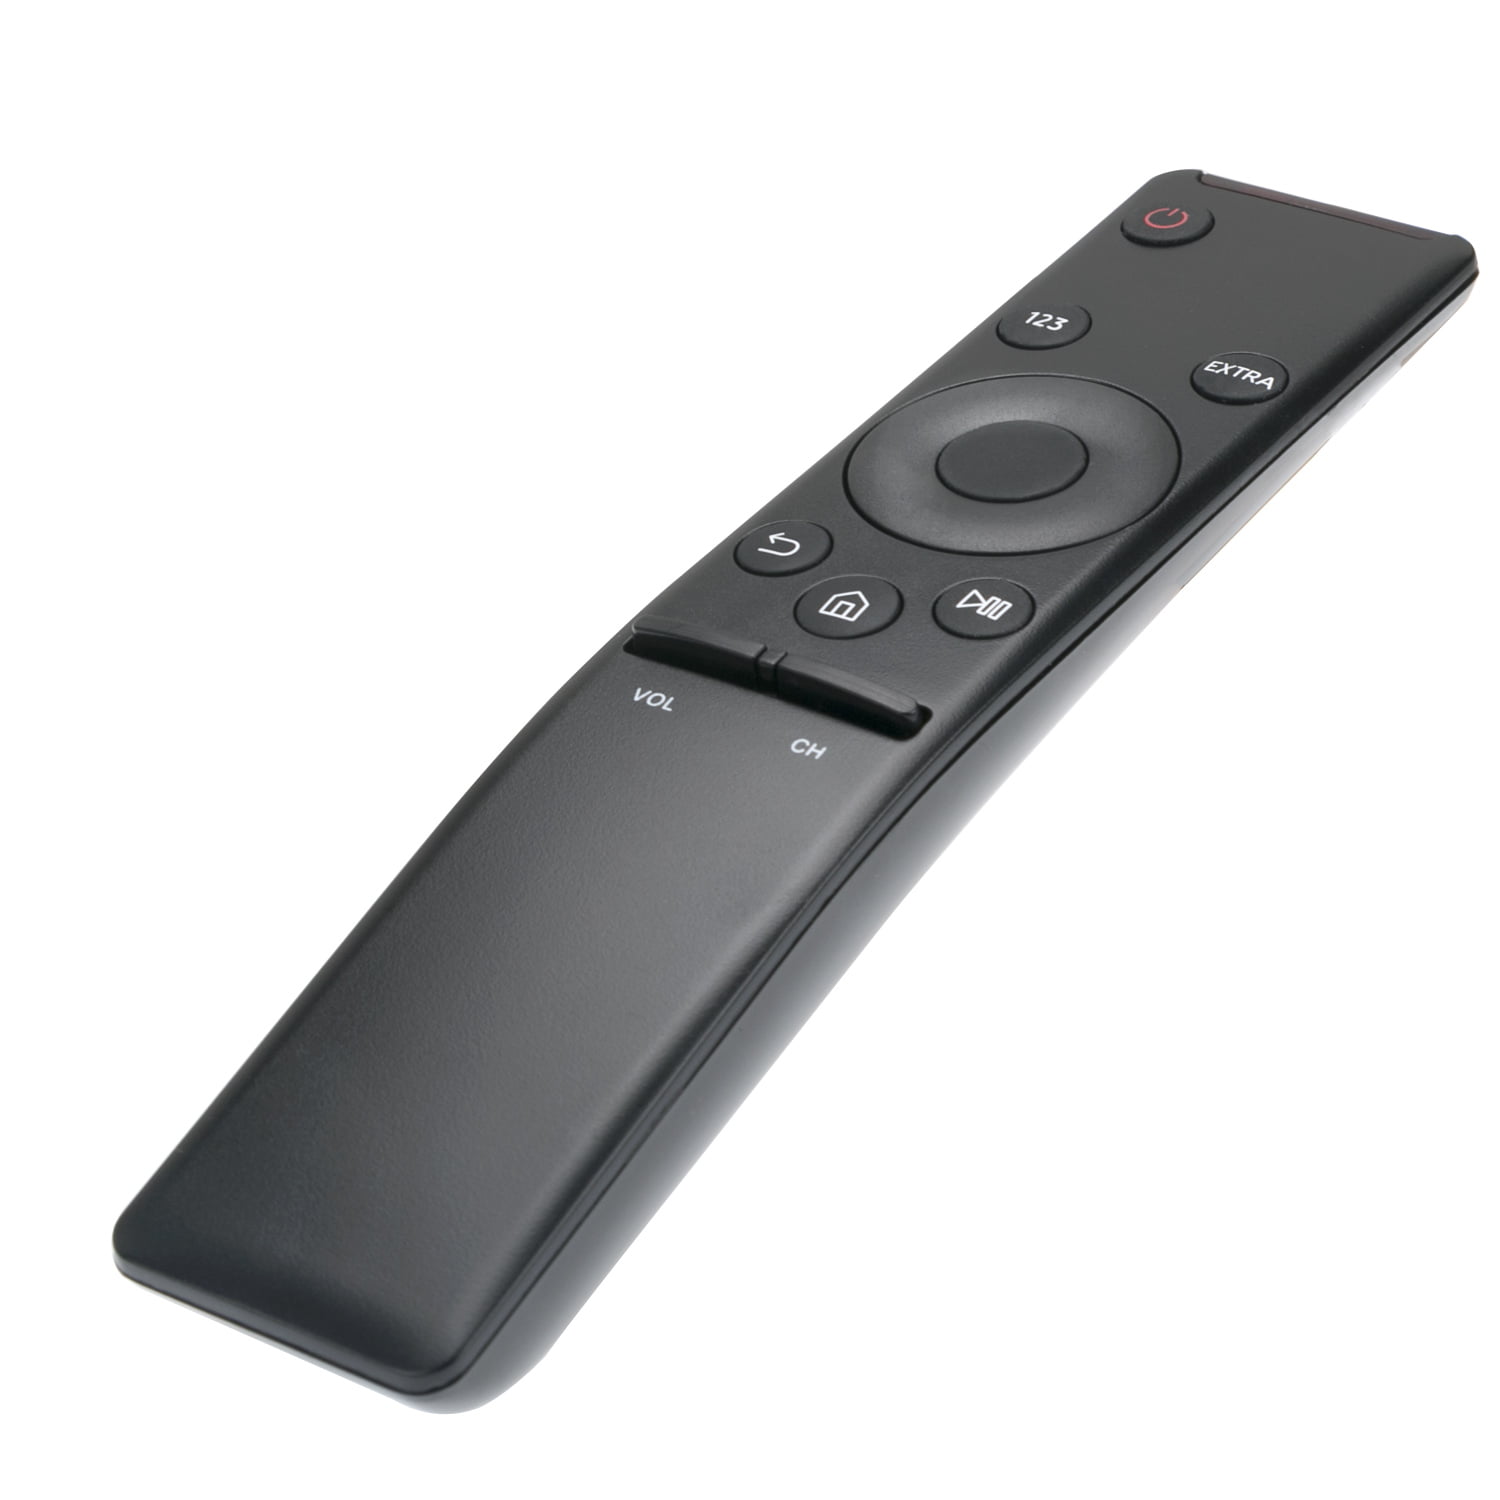 smart remote for samsung smart tv